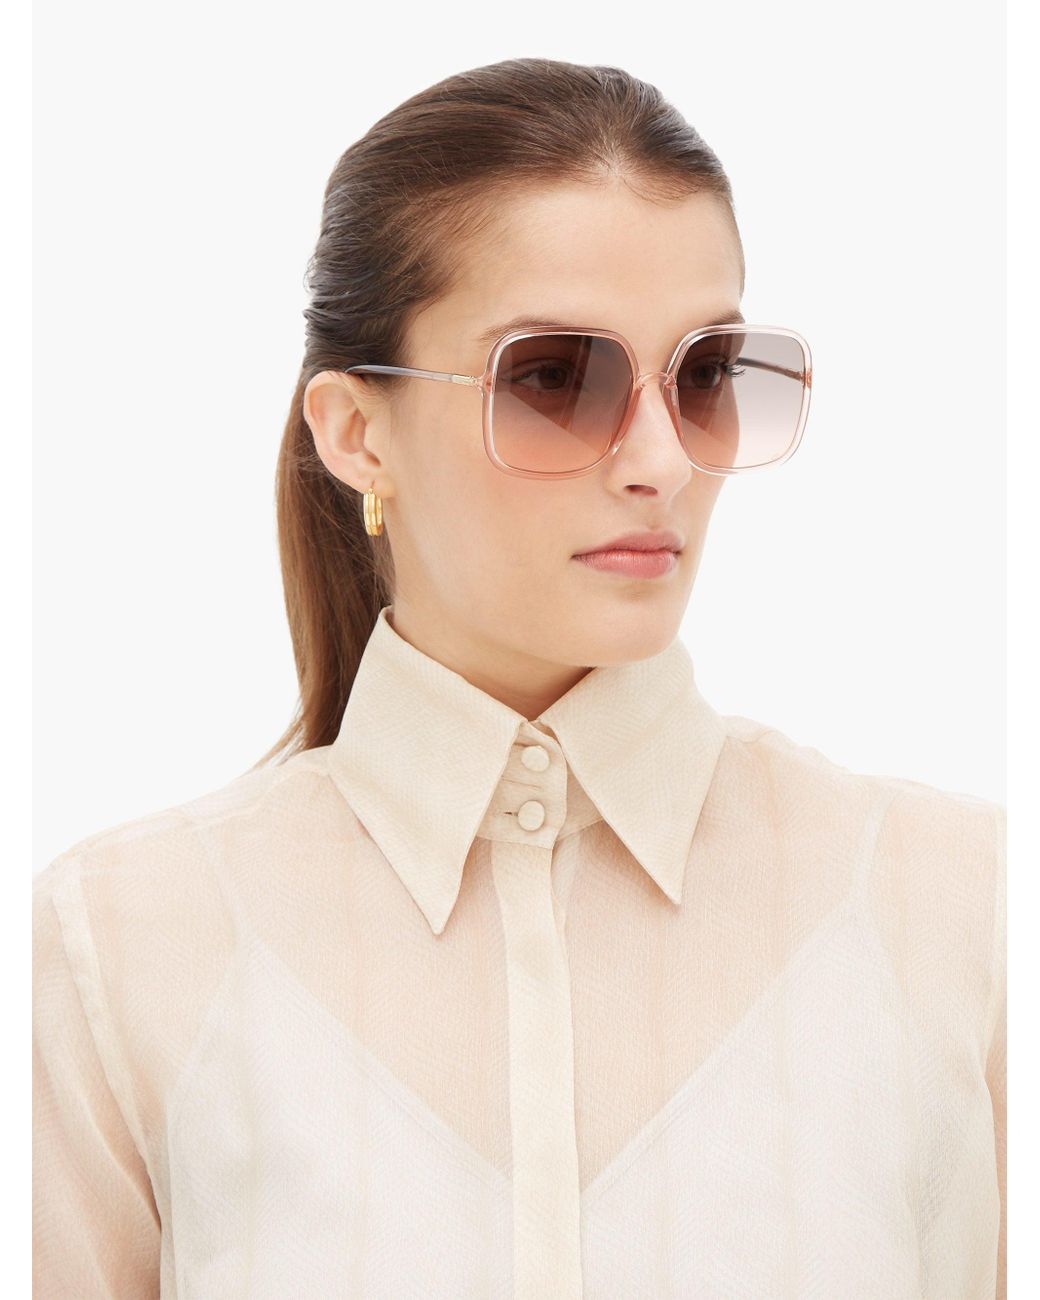 SOSTELL1S01N5FF Unisex Christian Dior SOSTELL1S Sunglasses  eBay